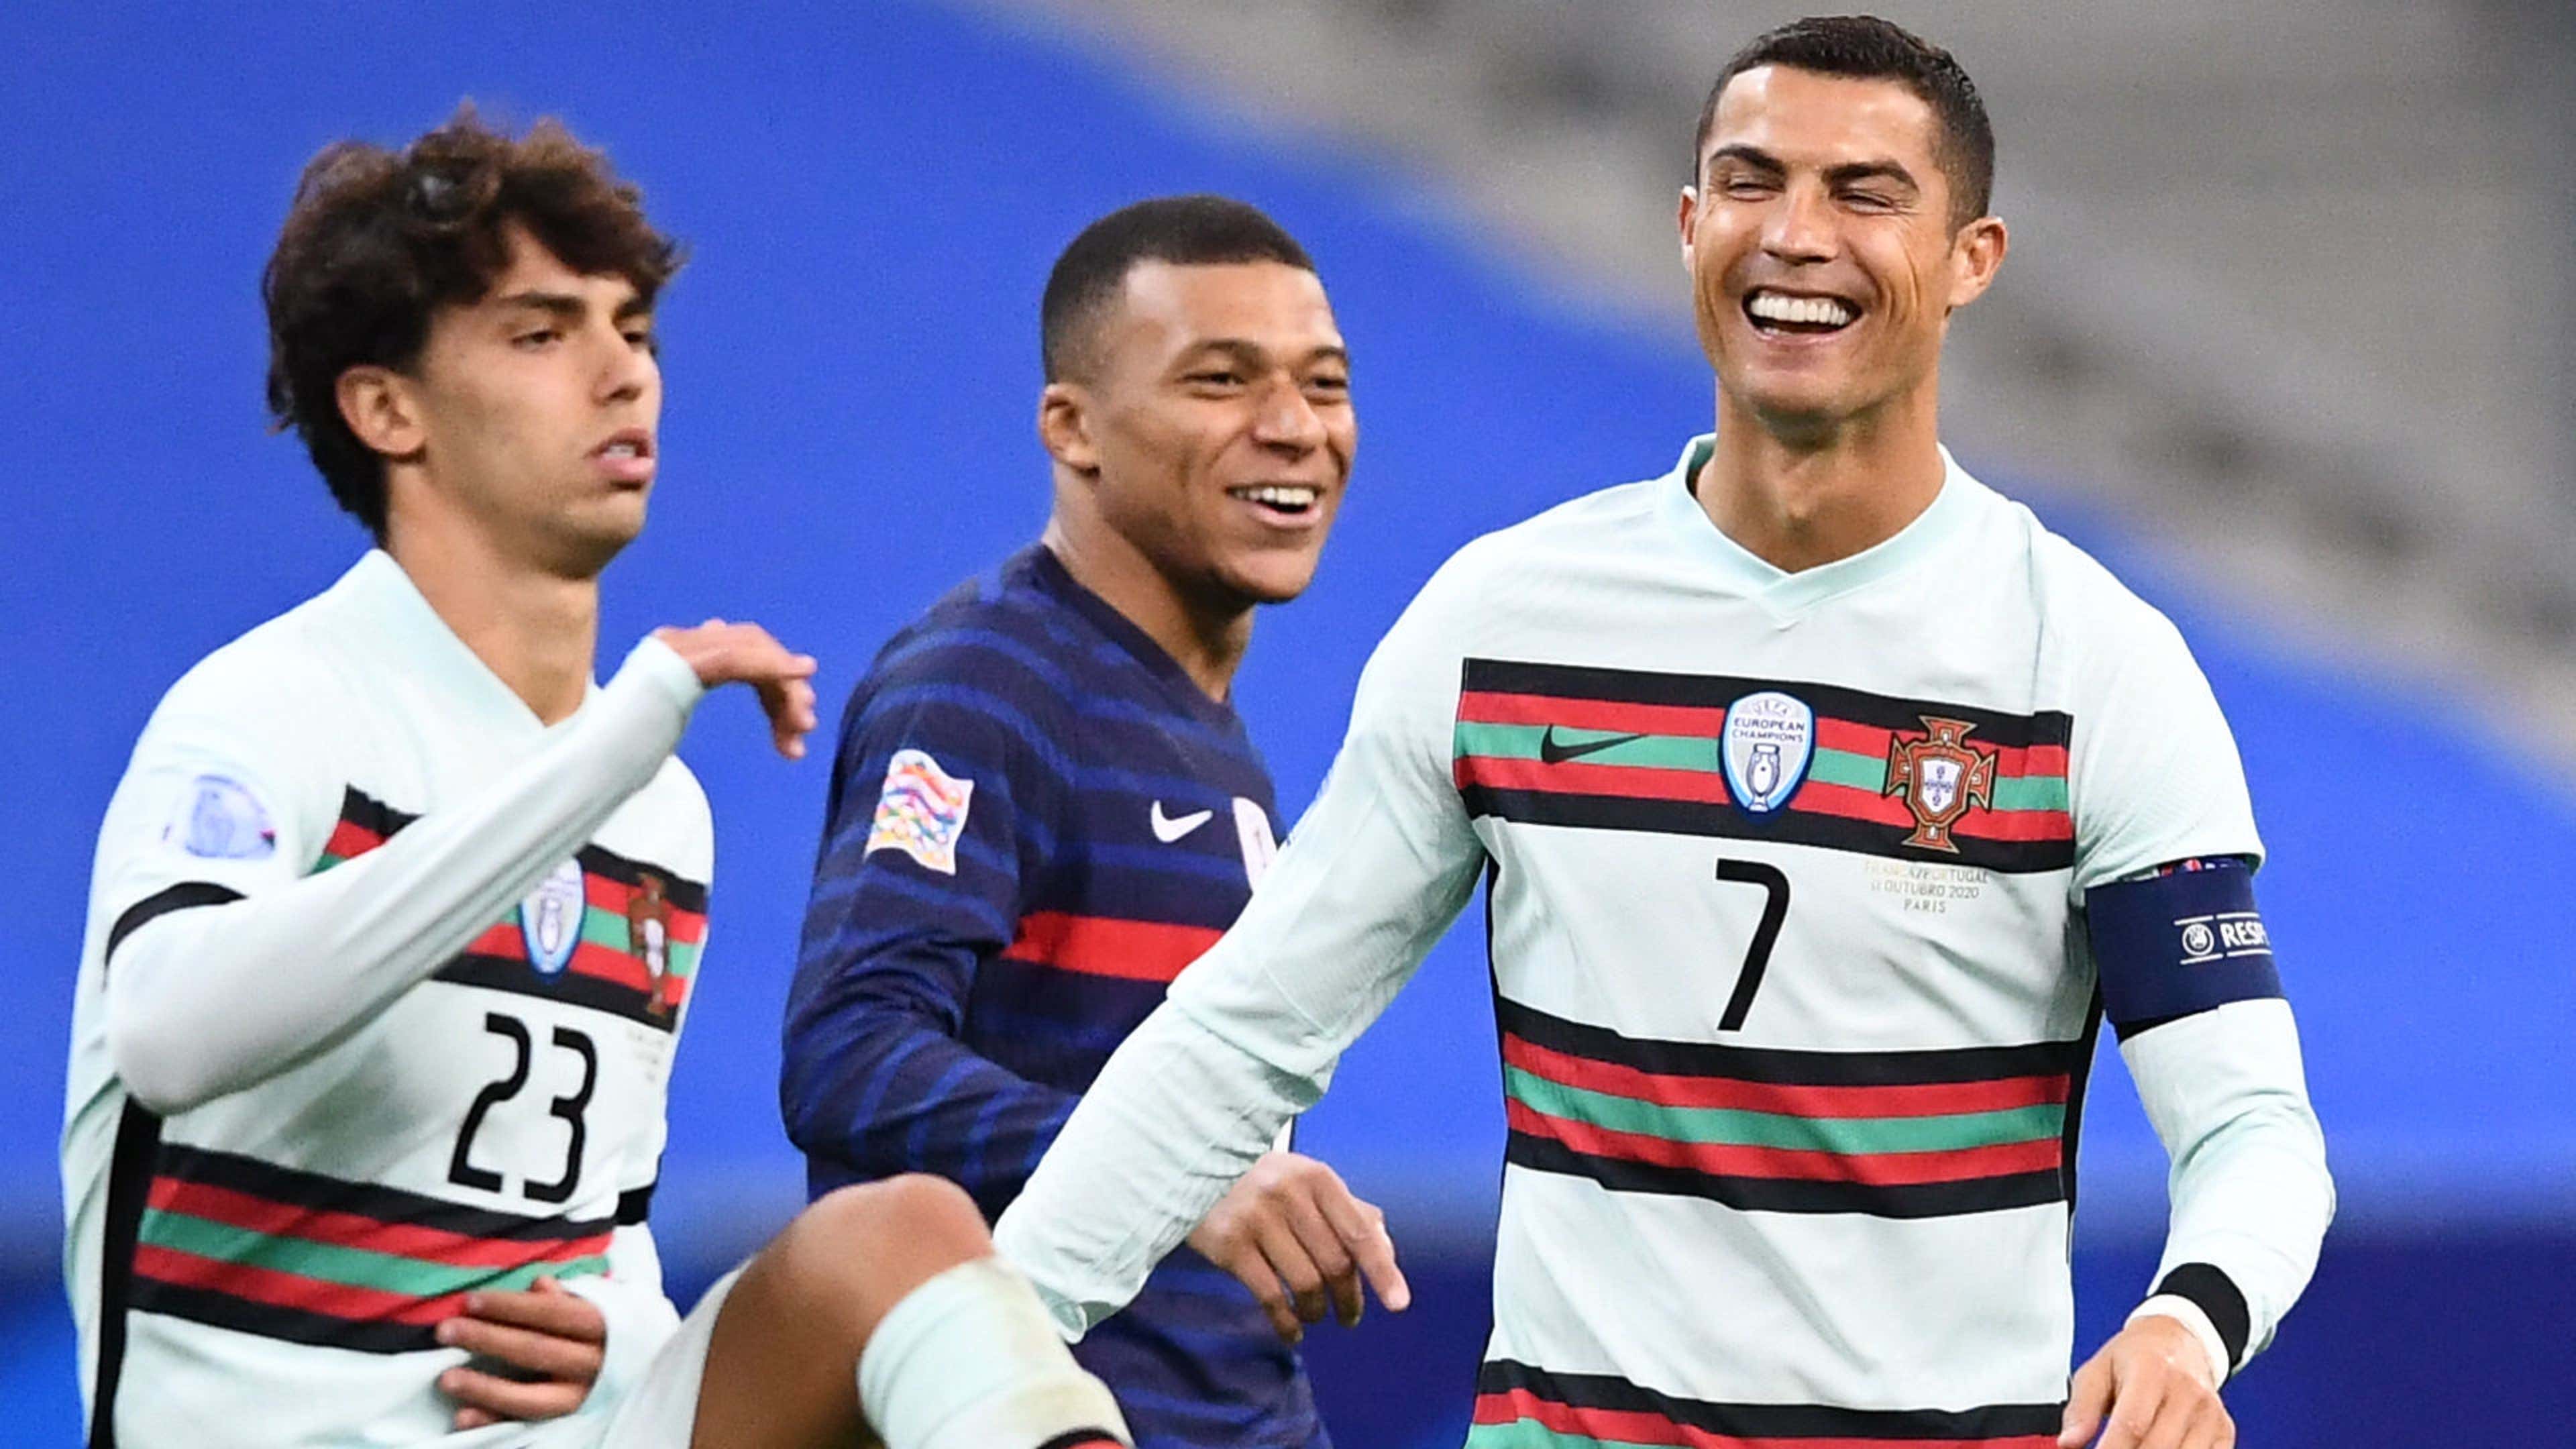 Pháp 0-0 Bđn) Đăng Ảnh Cùng Ronaldo, Mbappe 'Gây Bão' Trên Mxh | Goal.Com  Việt Nam